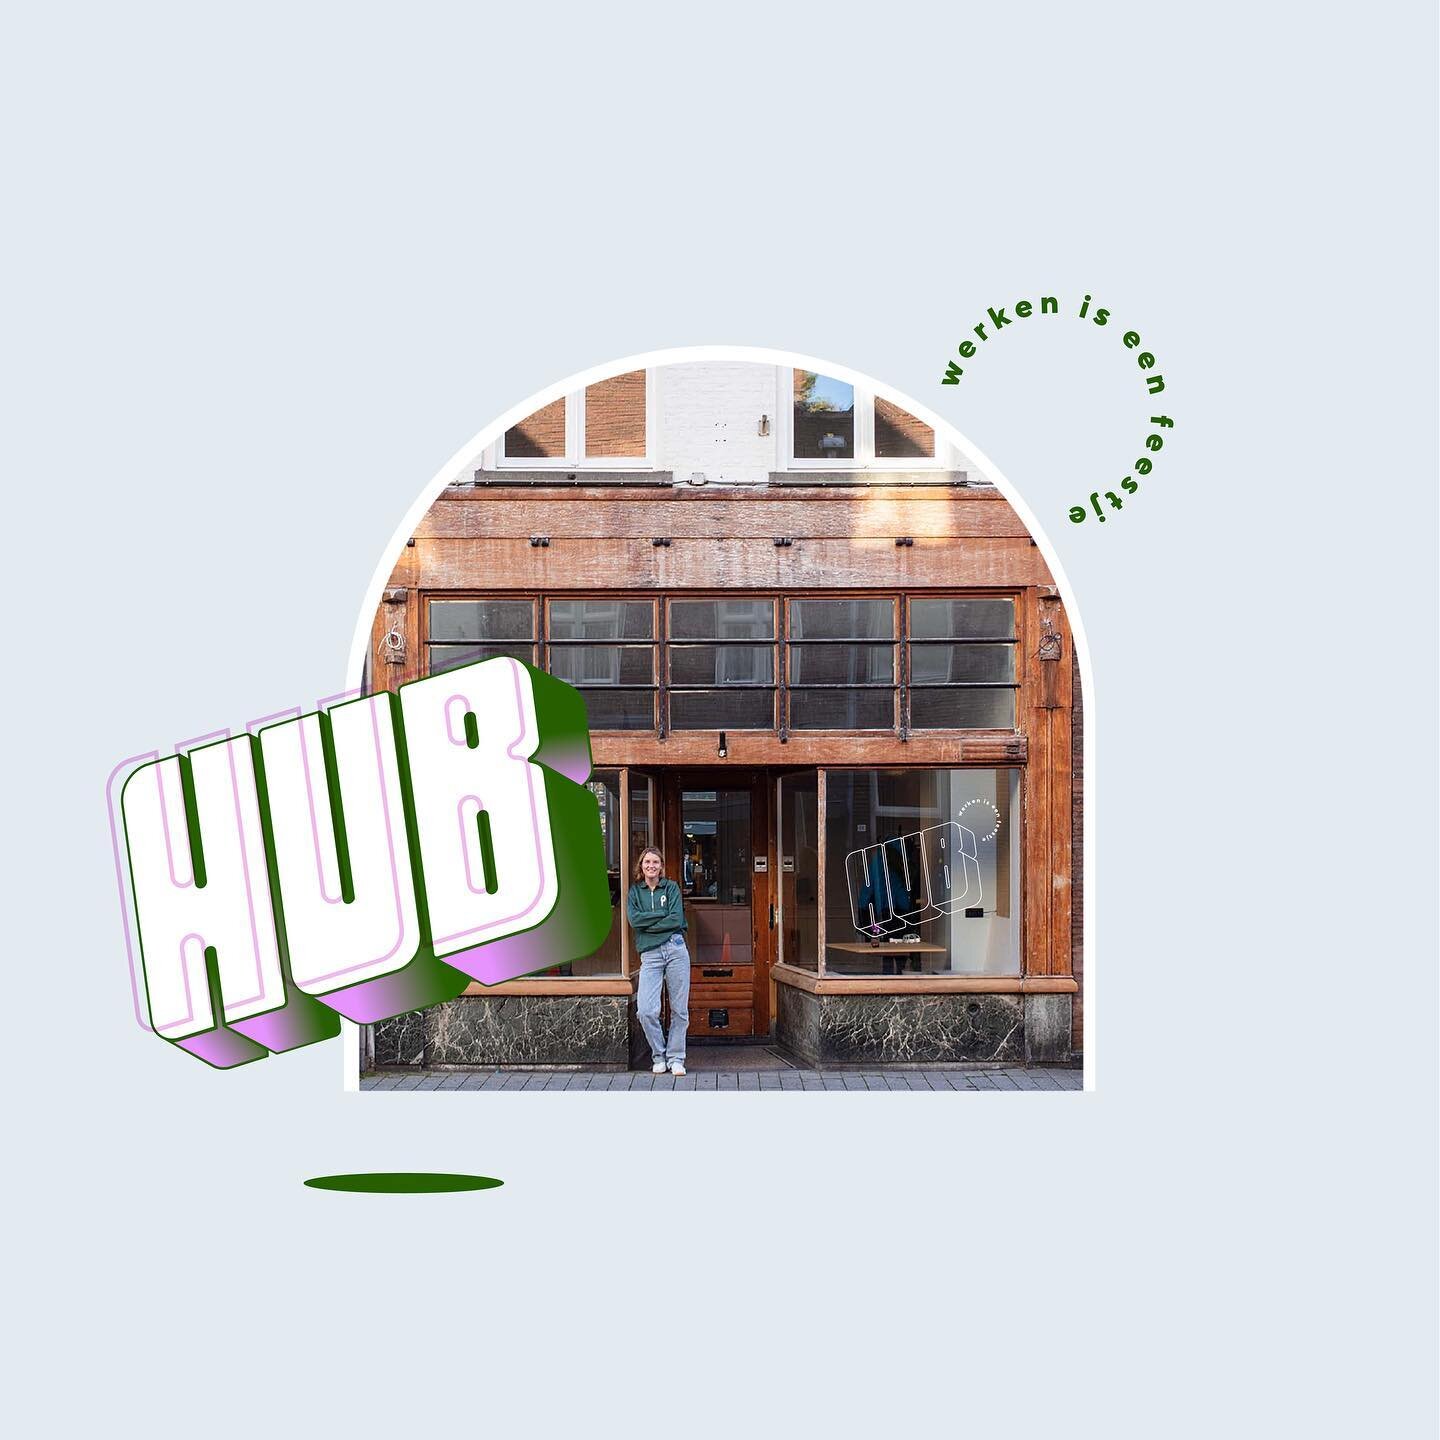 New HUB in town!⁠🕺🏽
⁠
Schuif aan bij de gezelligste flexibele werkplek hartje Den Bosch. Want; werken is een feestje! Voor iedereen die een vaste werkplek zoekt of juist af en toe buiten de deur wil werken, bij @hub_denbosch ben je aan het juiste a